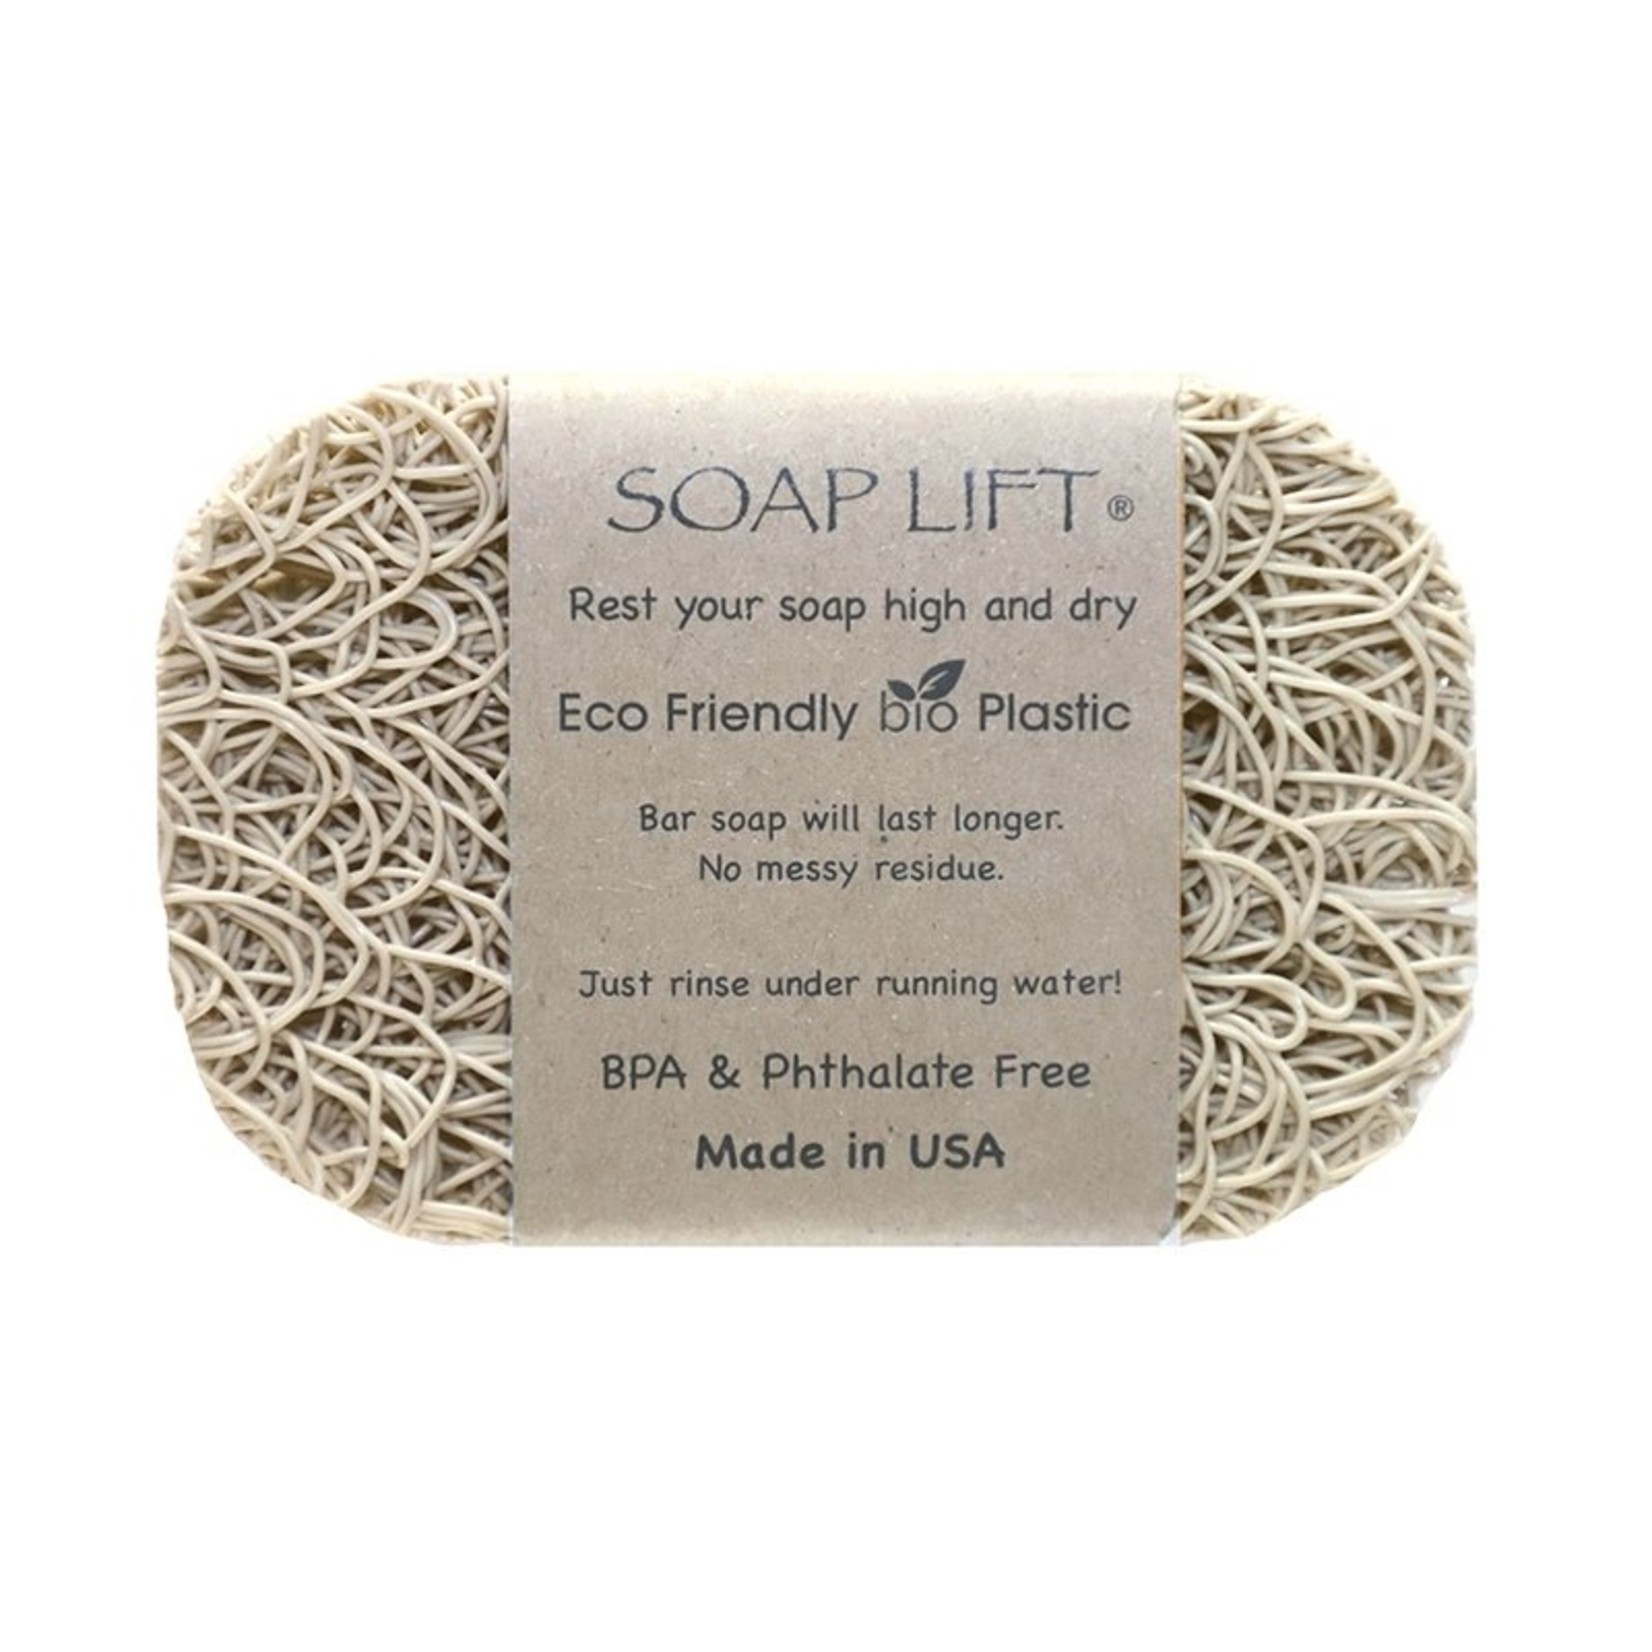 SOAPLIFT SOAP LIFT - Bone